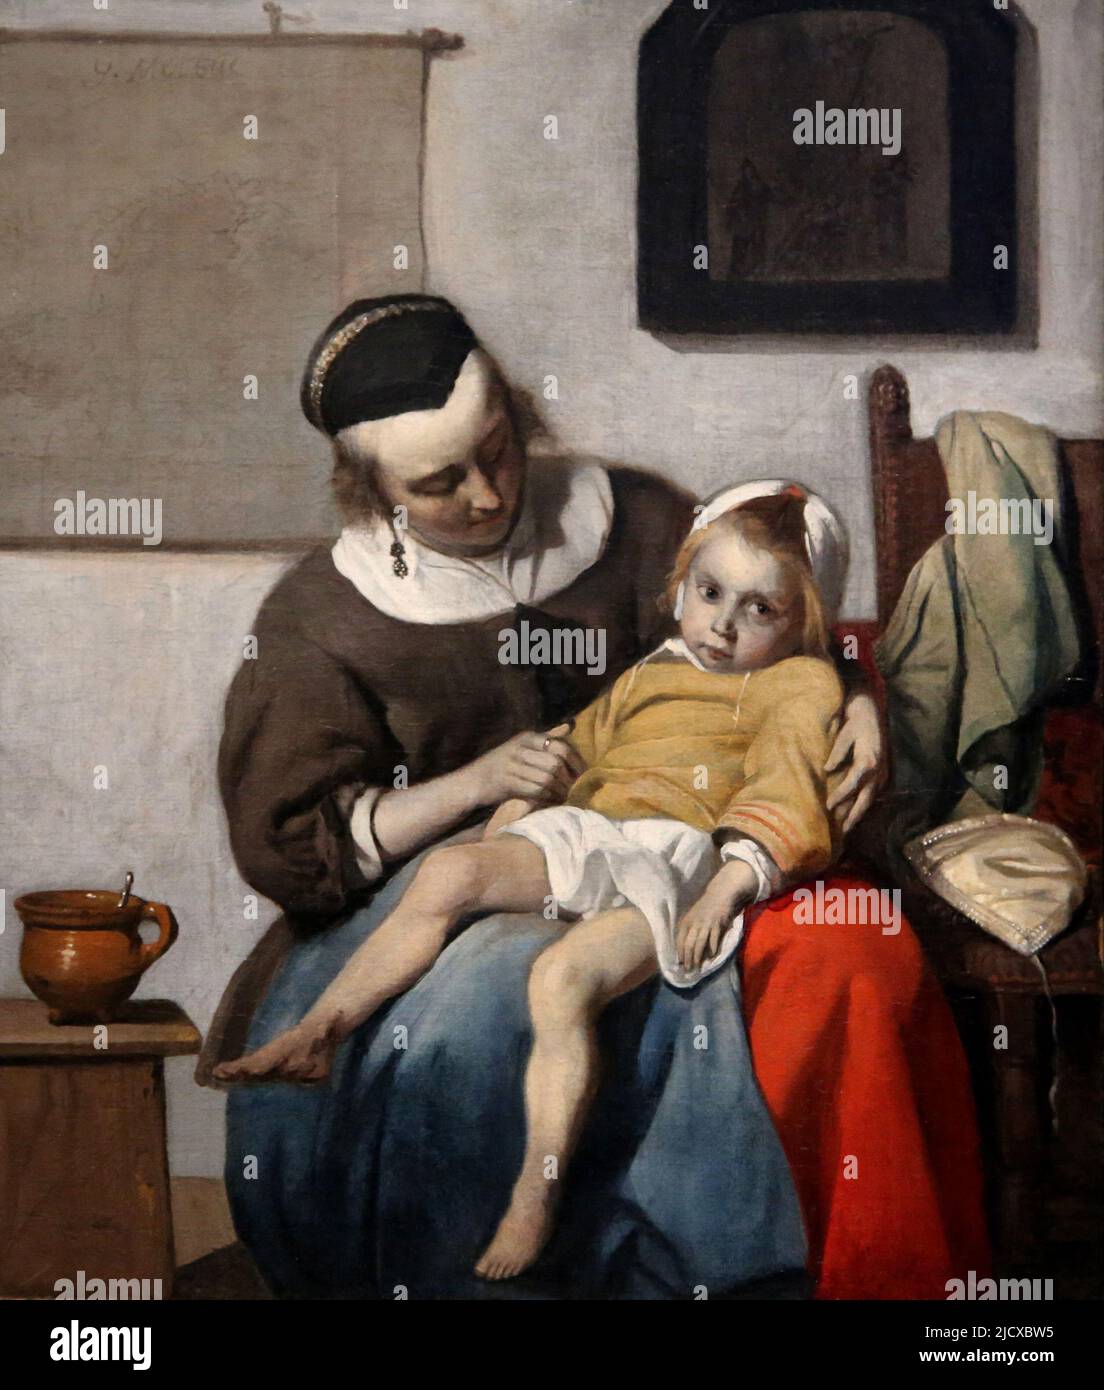 L'enfant malade par Gabriel Metsu (1629-1667). Huile sur toile, c. 1664-1666. Rijksmuseum. Amsterdam. Pays-Bas. Banque D'Images